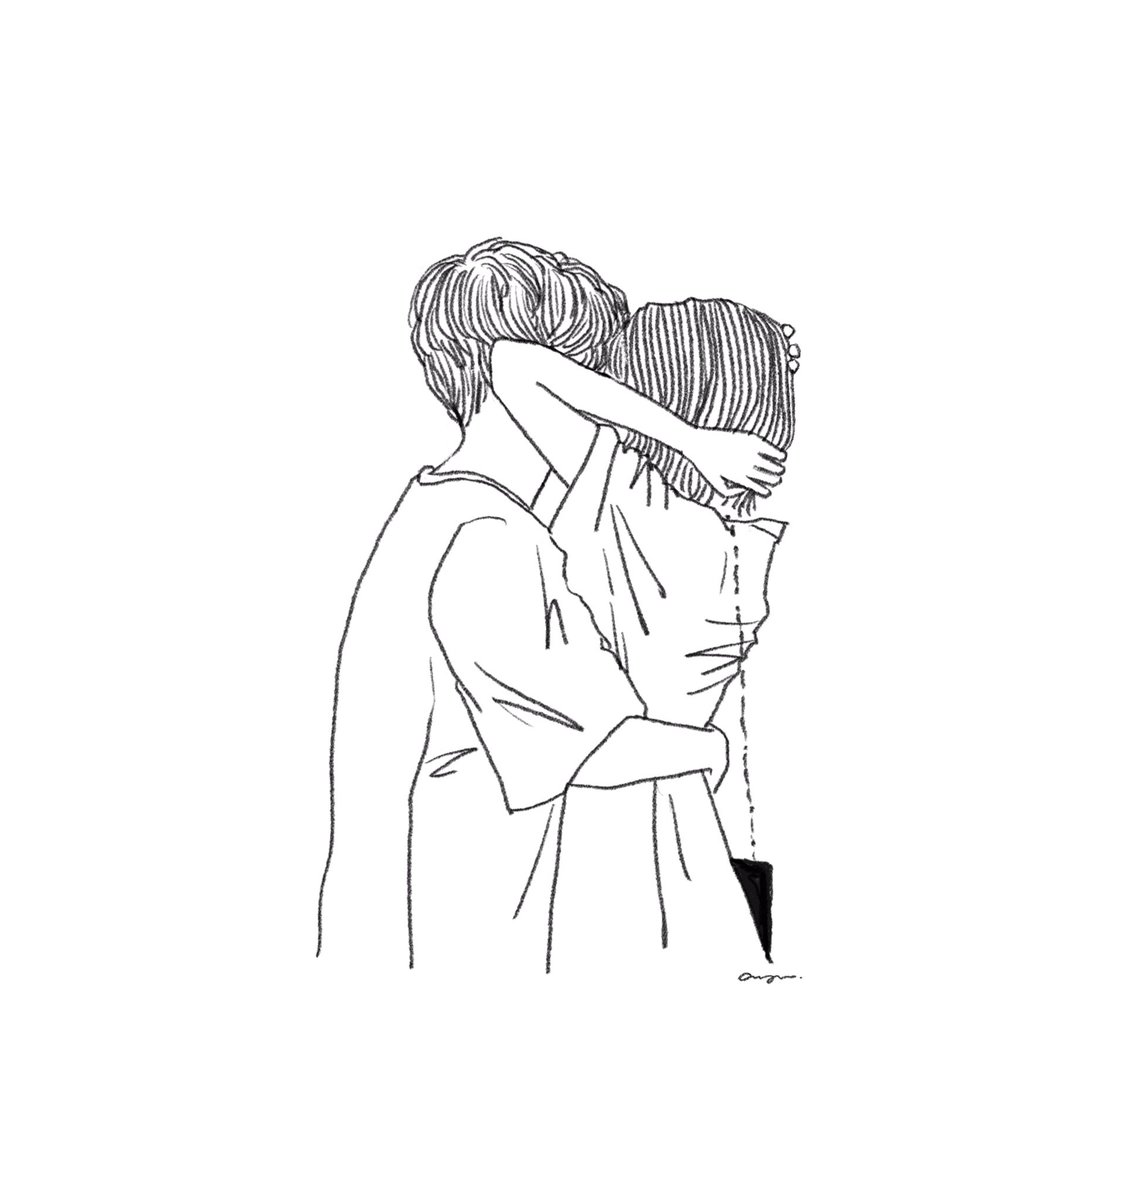 Akira Ayumi 肌断食中のイラストレーター Kiss イラスト カップルイラスト ガールズイラスト T Co Gtf649ghxc Twitter